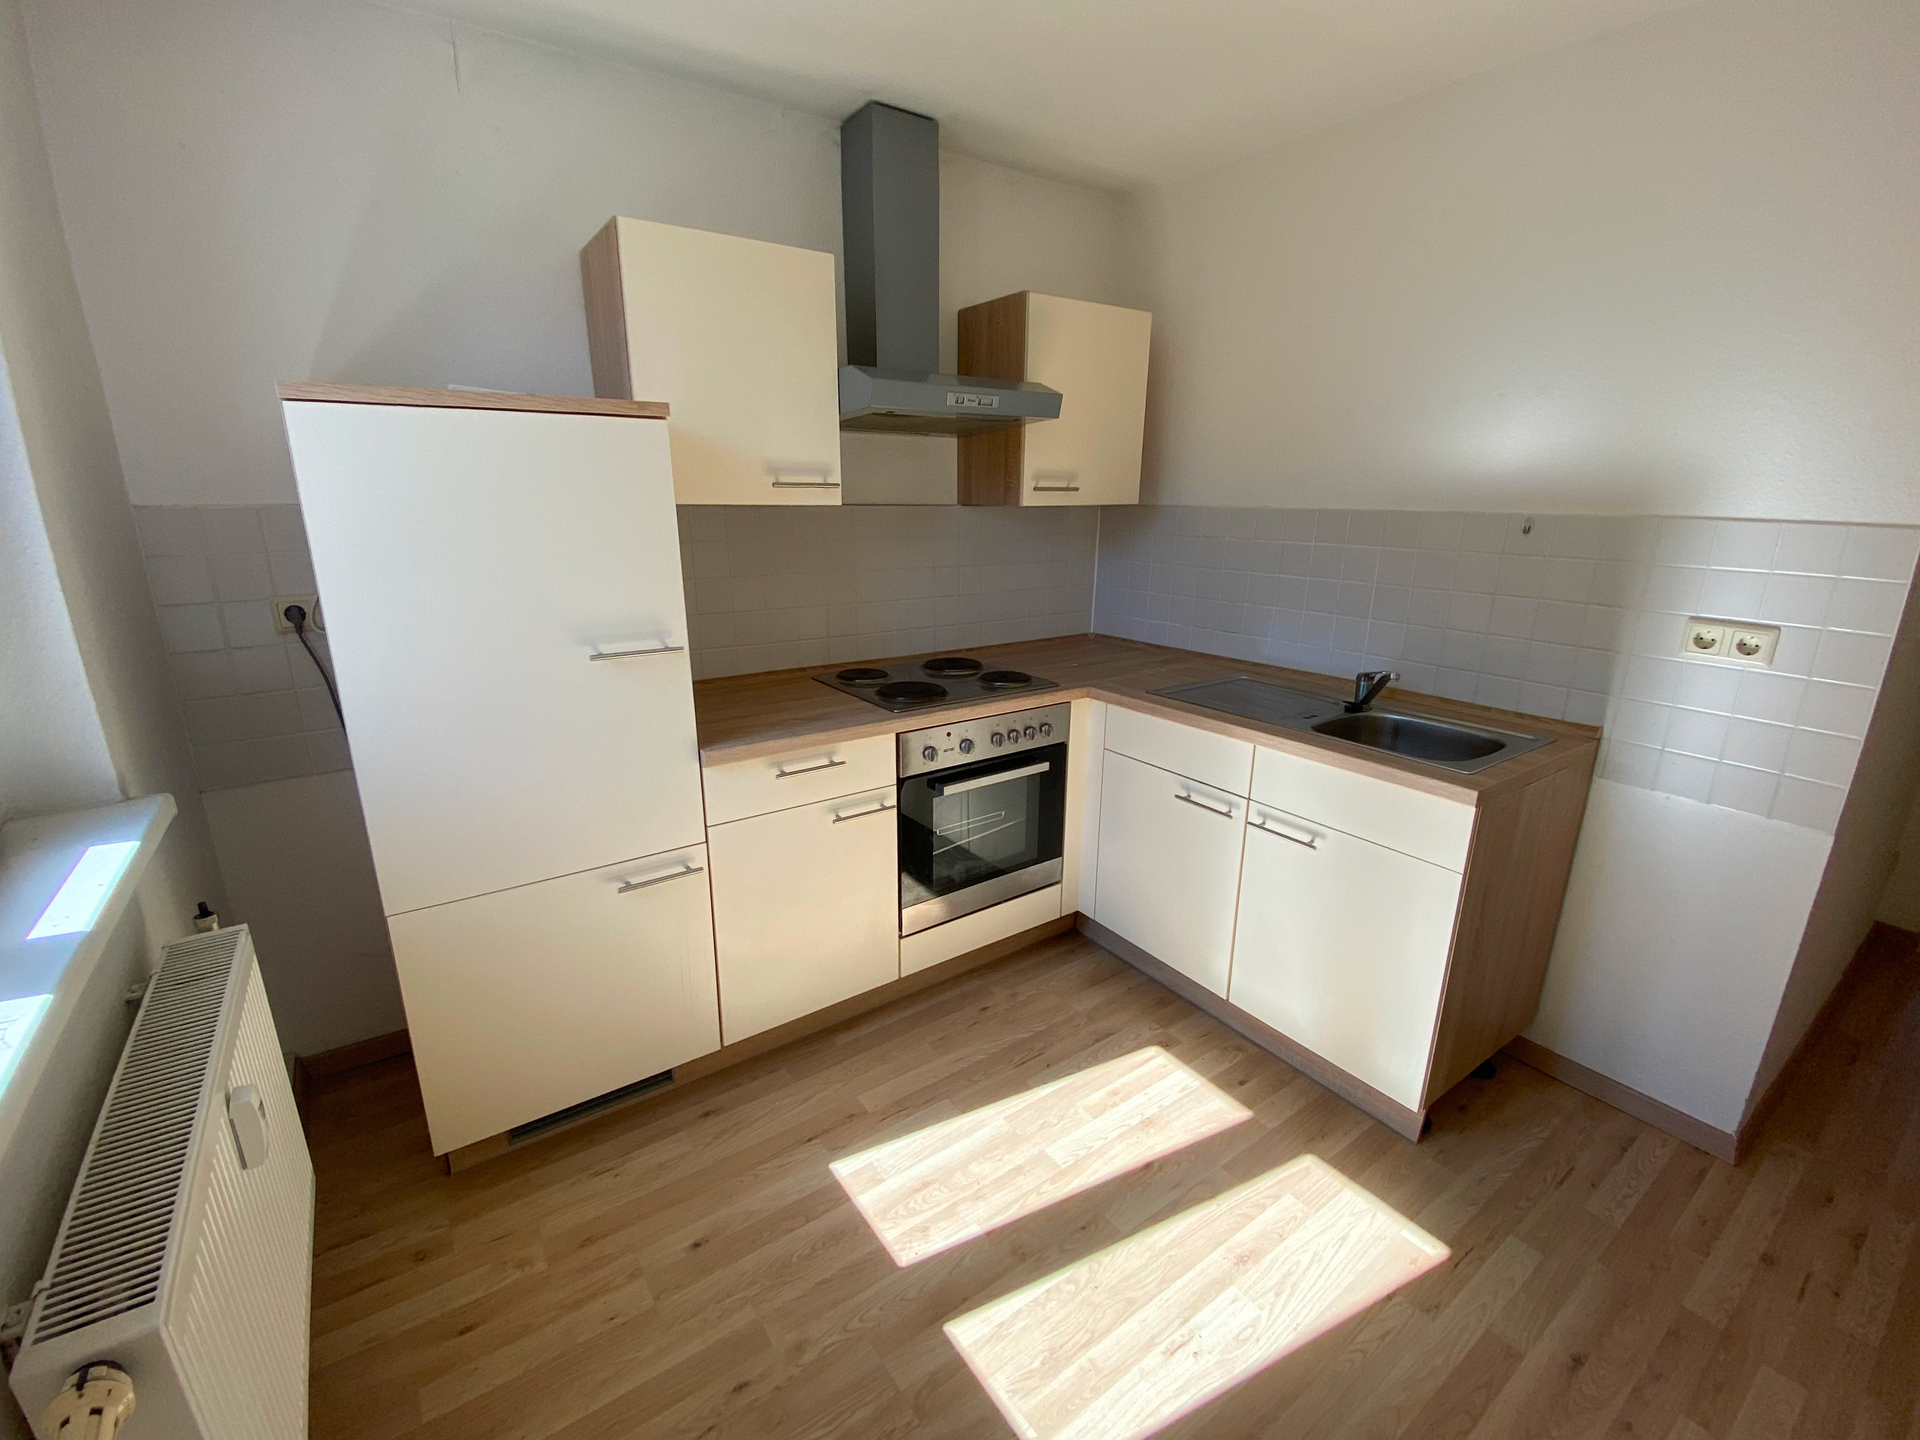 Ihr persönliches Refugium: 3-Zimmer-Wohnung mit Balkon und Einbauküche in Leipzig-Kleinzschocher - Einbaukueche